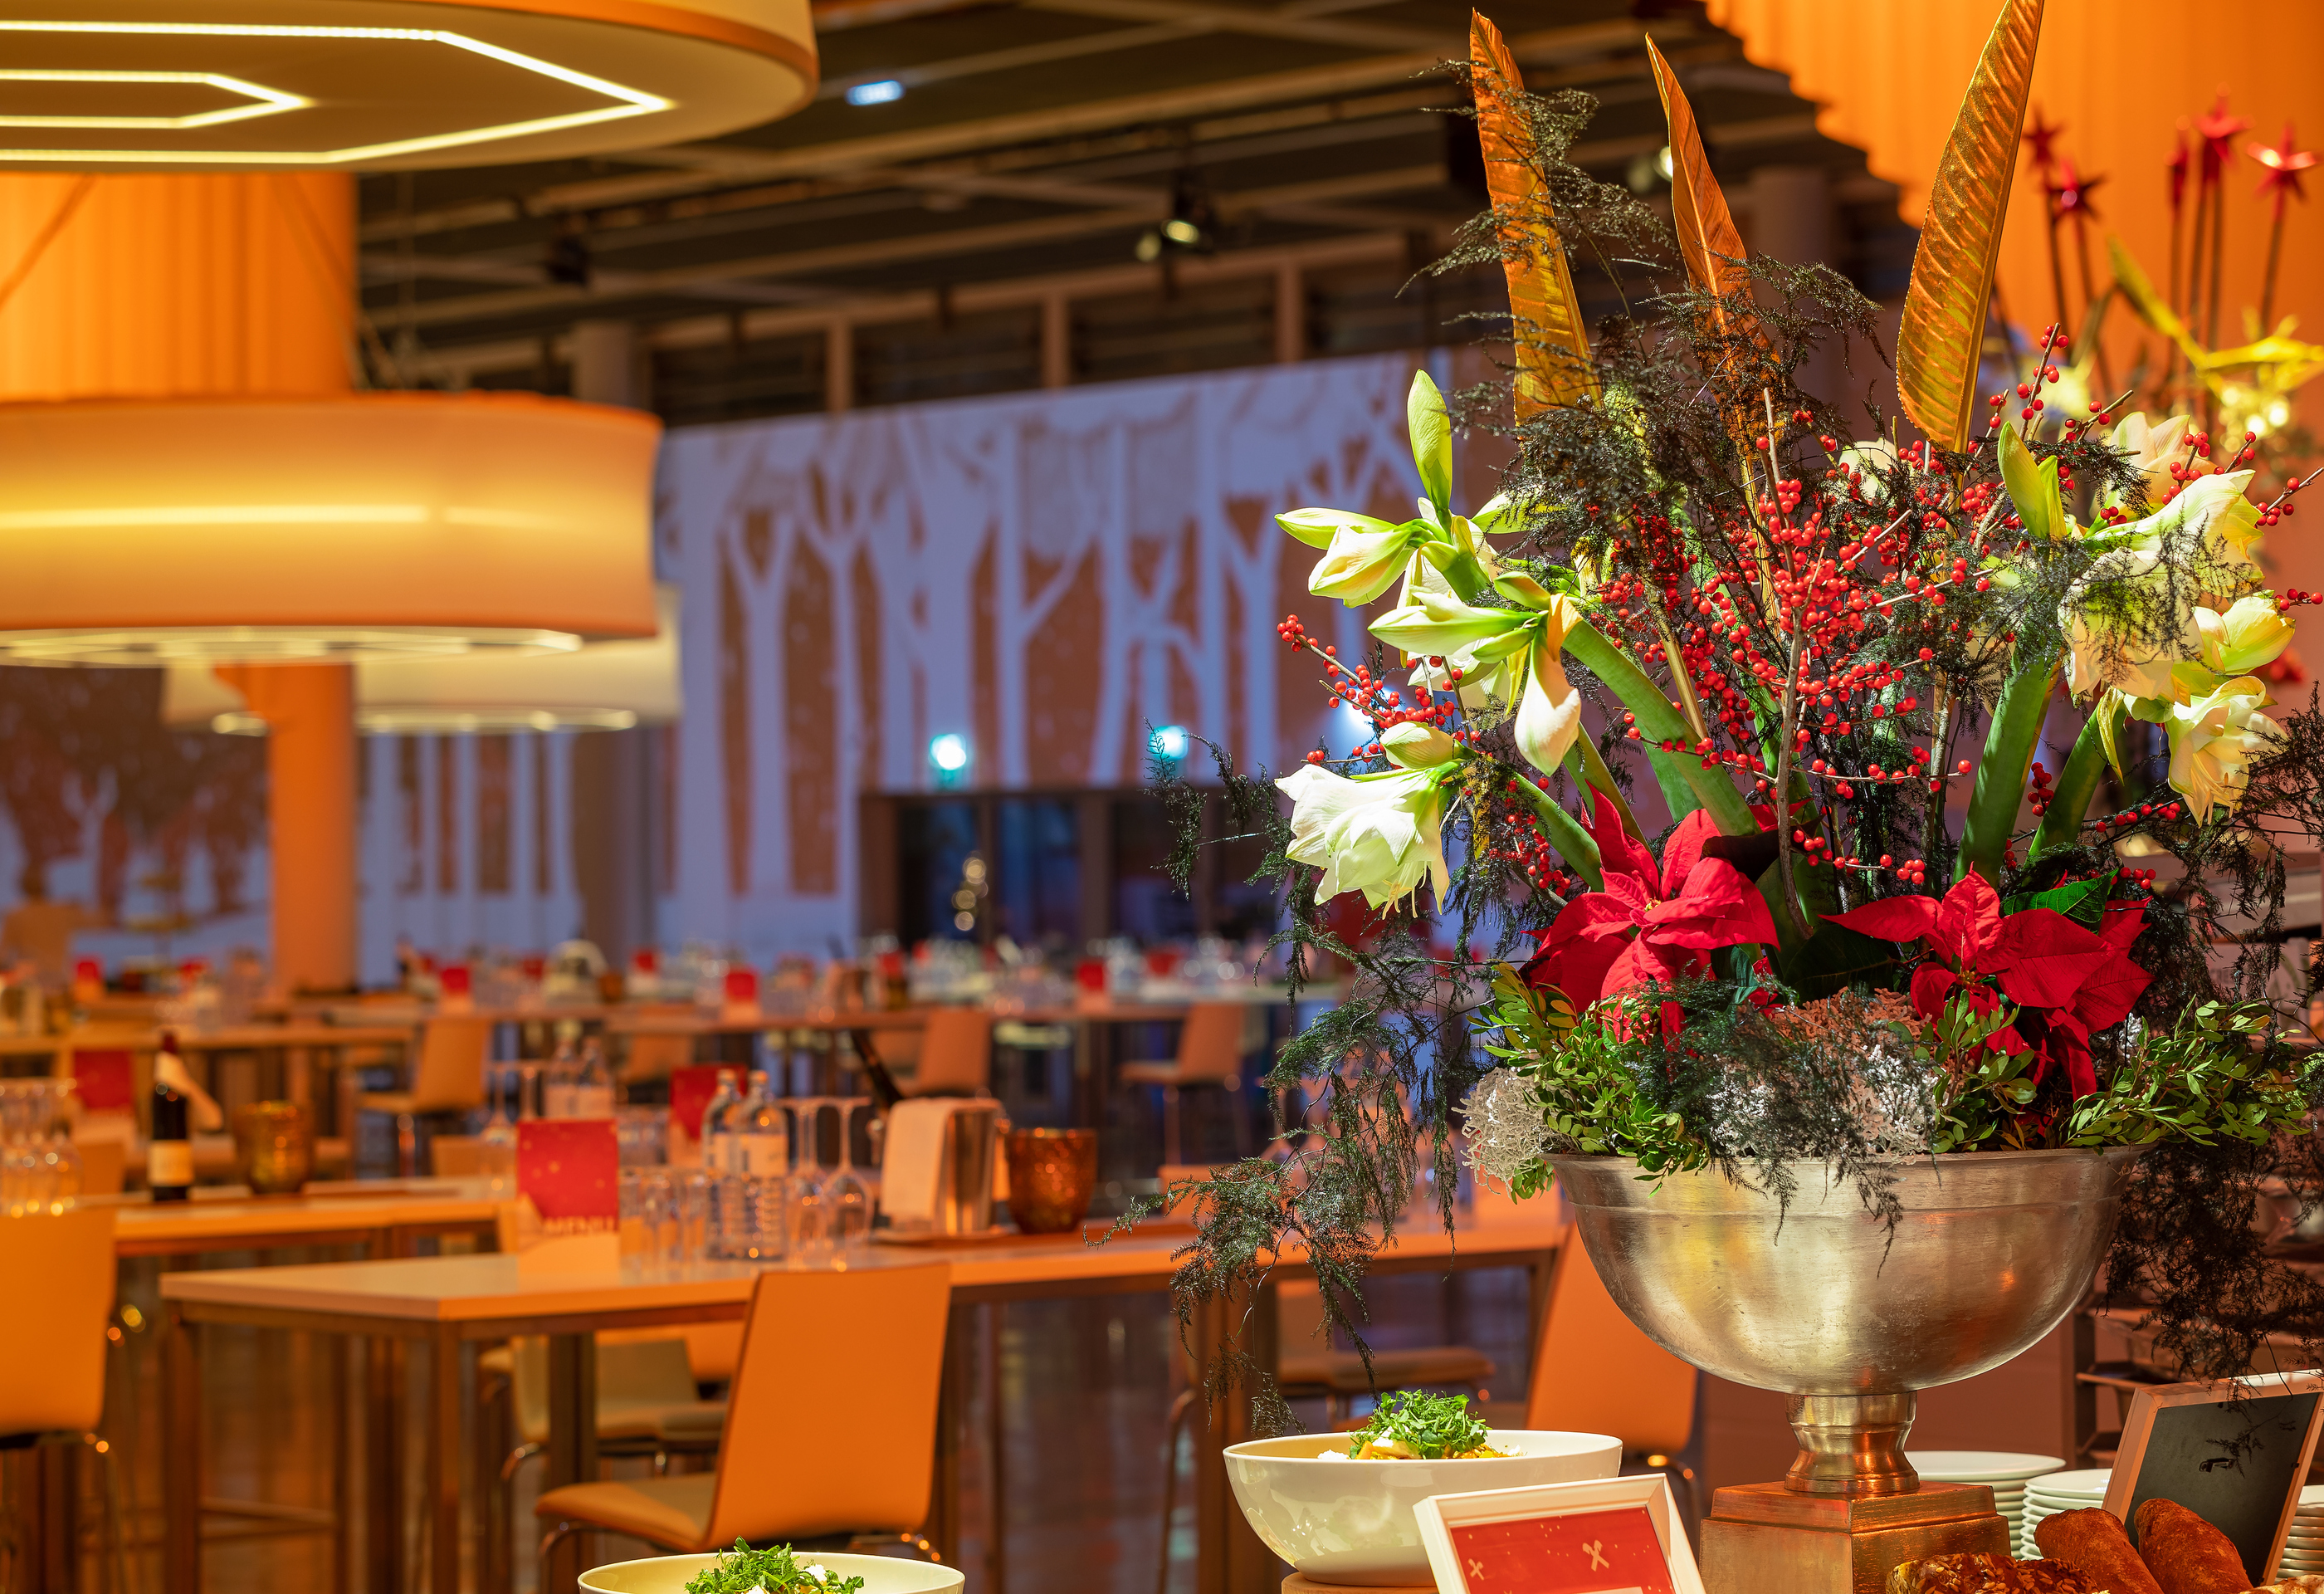 Foto: Eine Halle mit Blumengesteck, gedeckten Tischen, Lampen und Wandprojektion